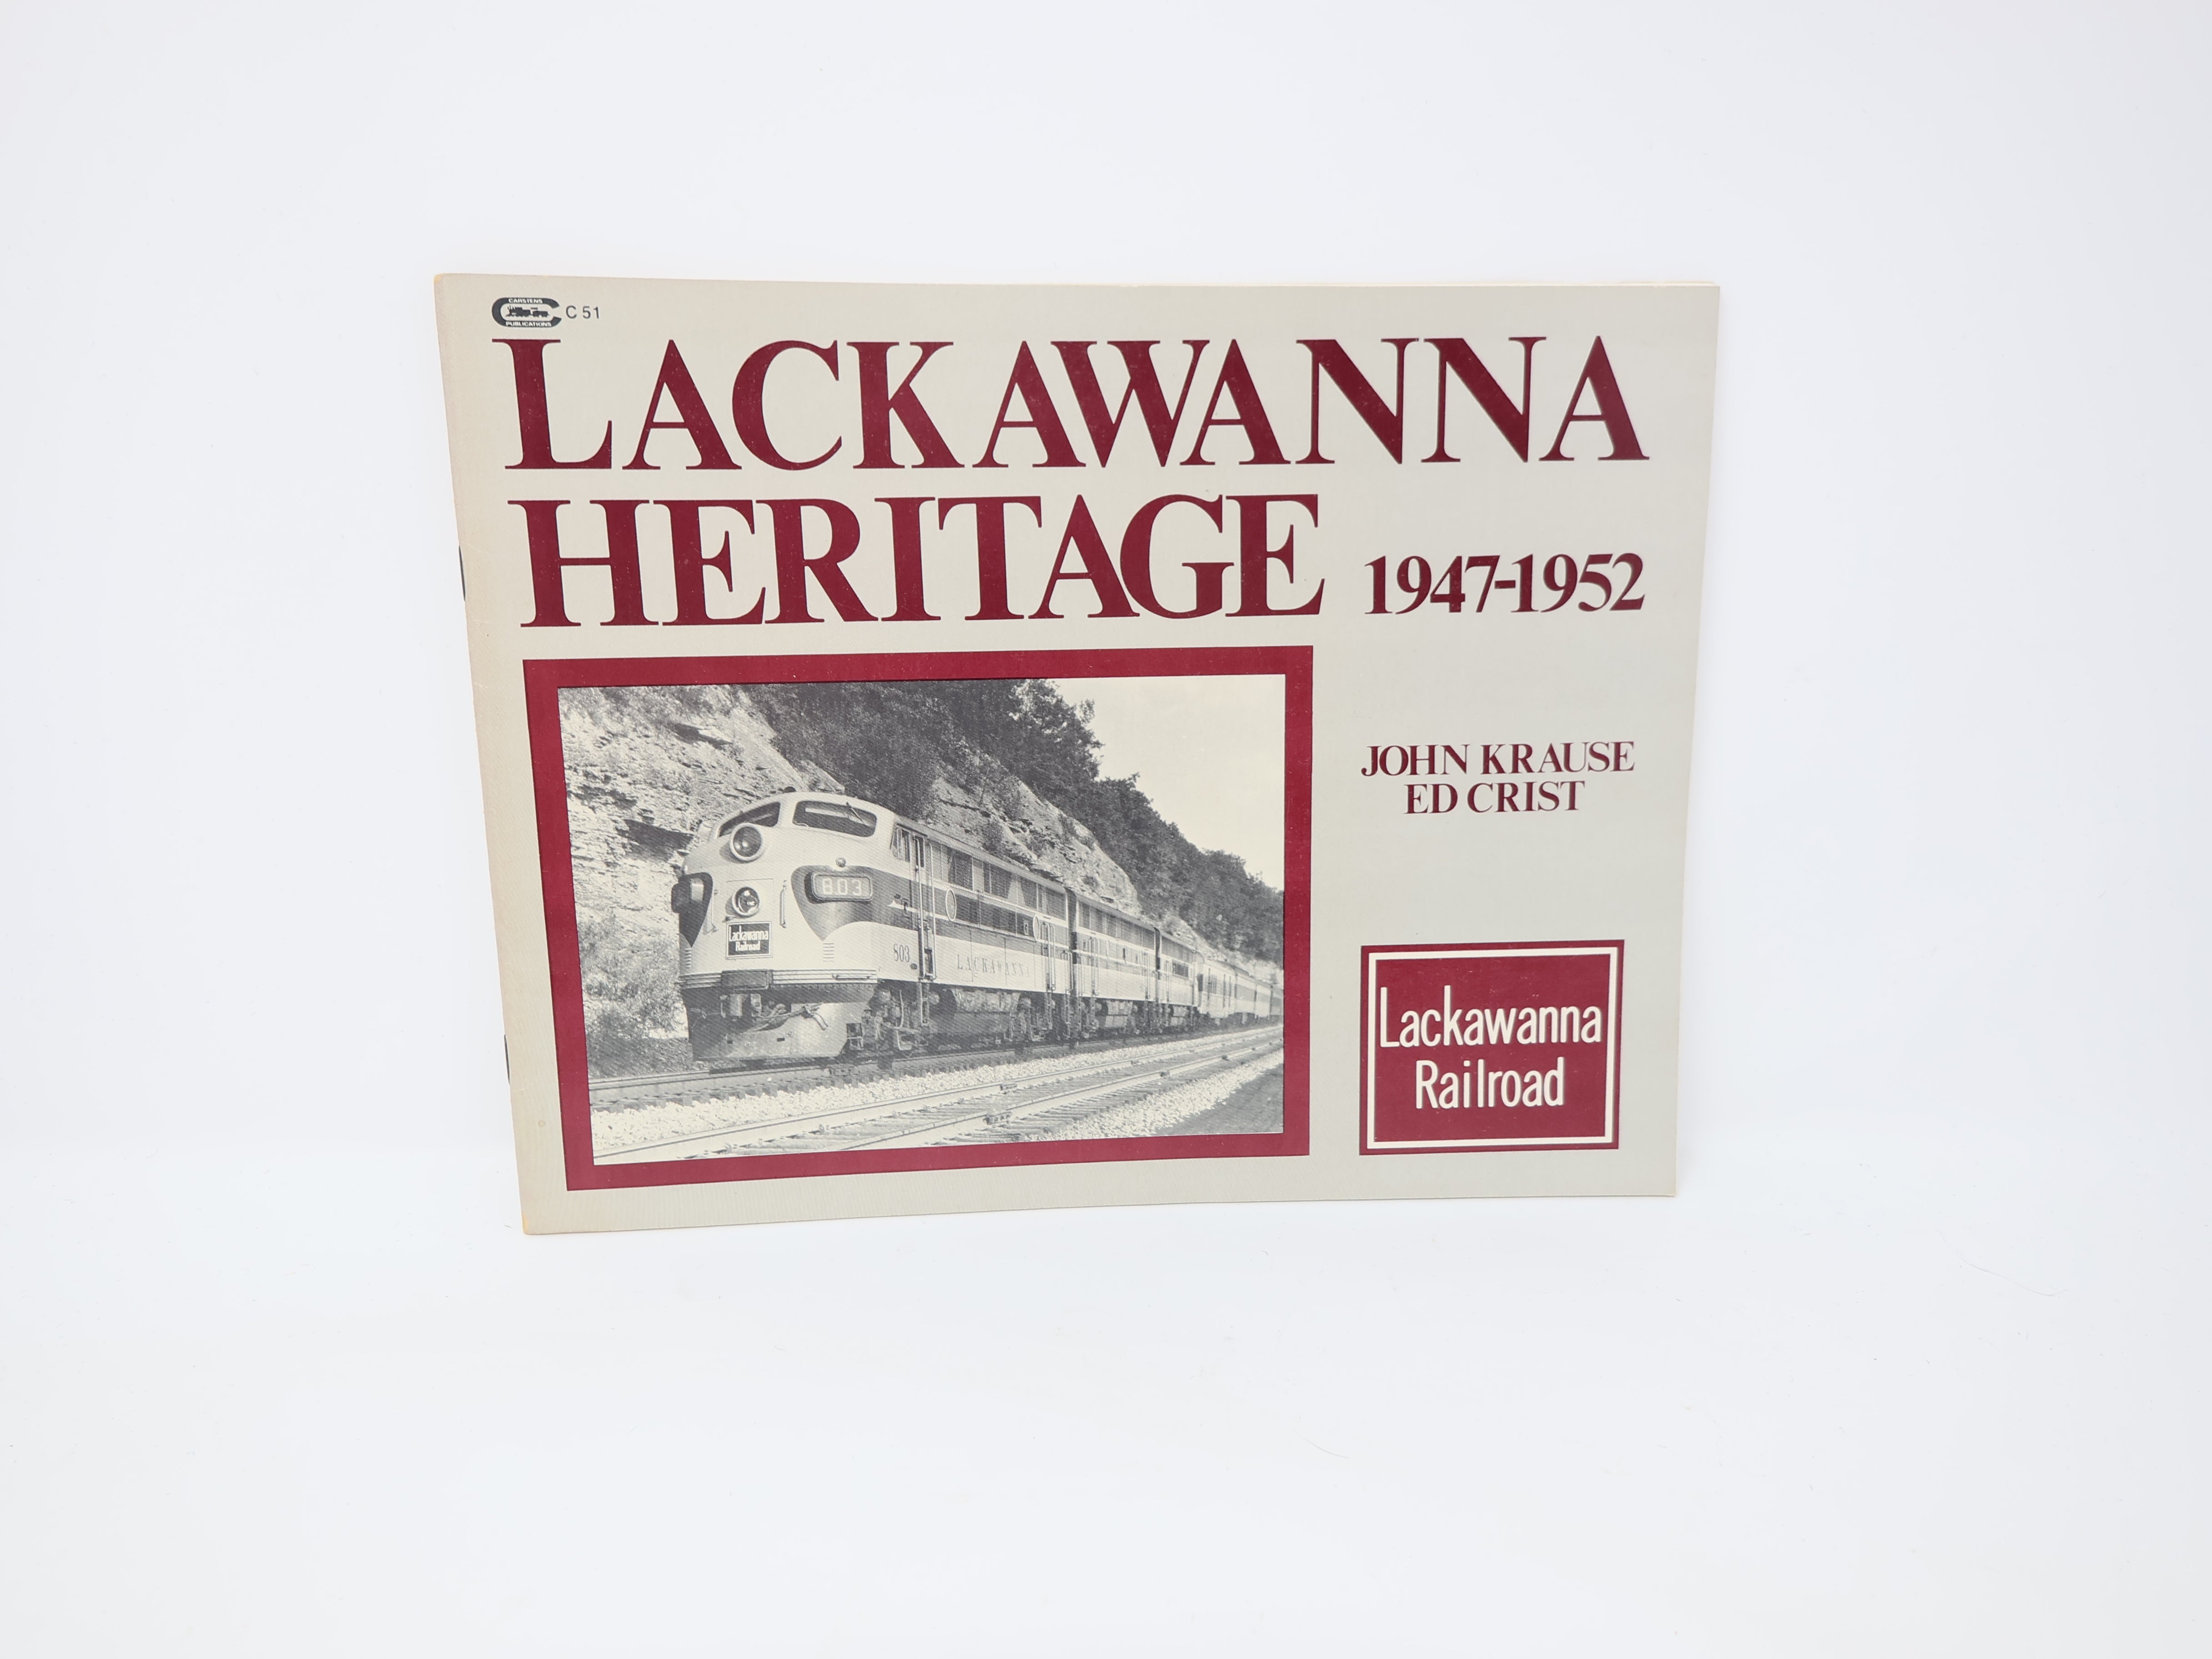 USED , Lackawanna Heritage 1947-1952 by John Krause Ed Crist Book